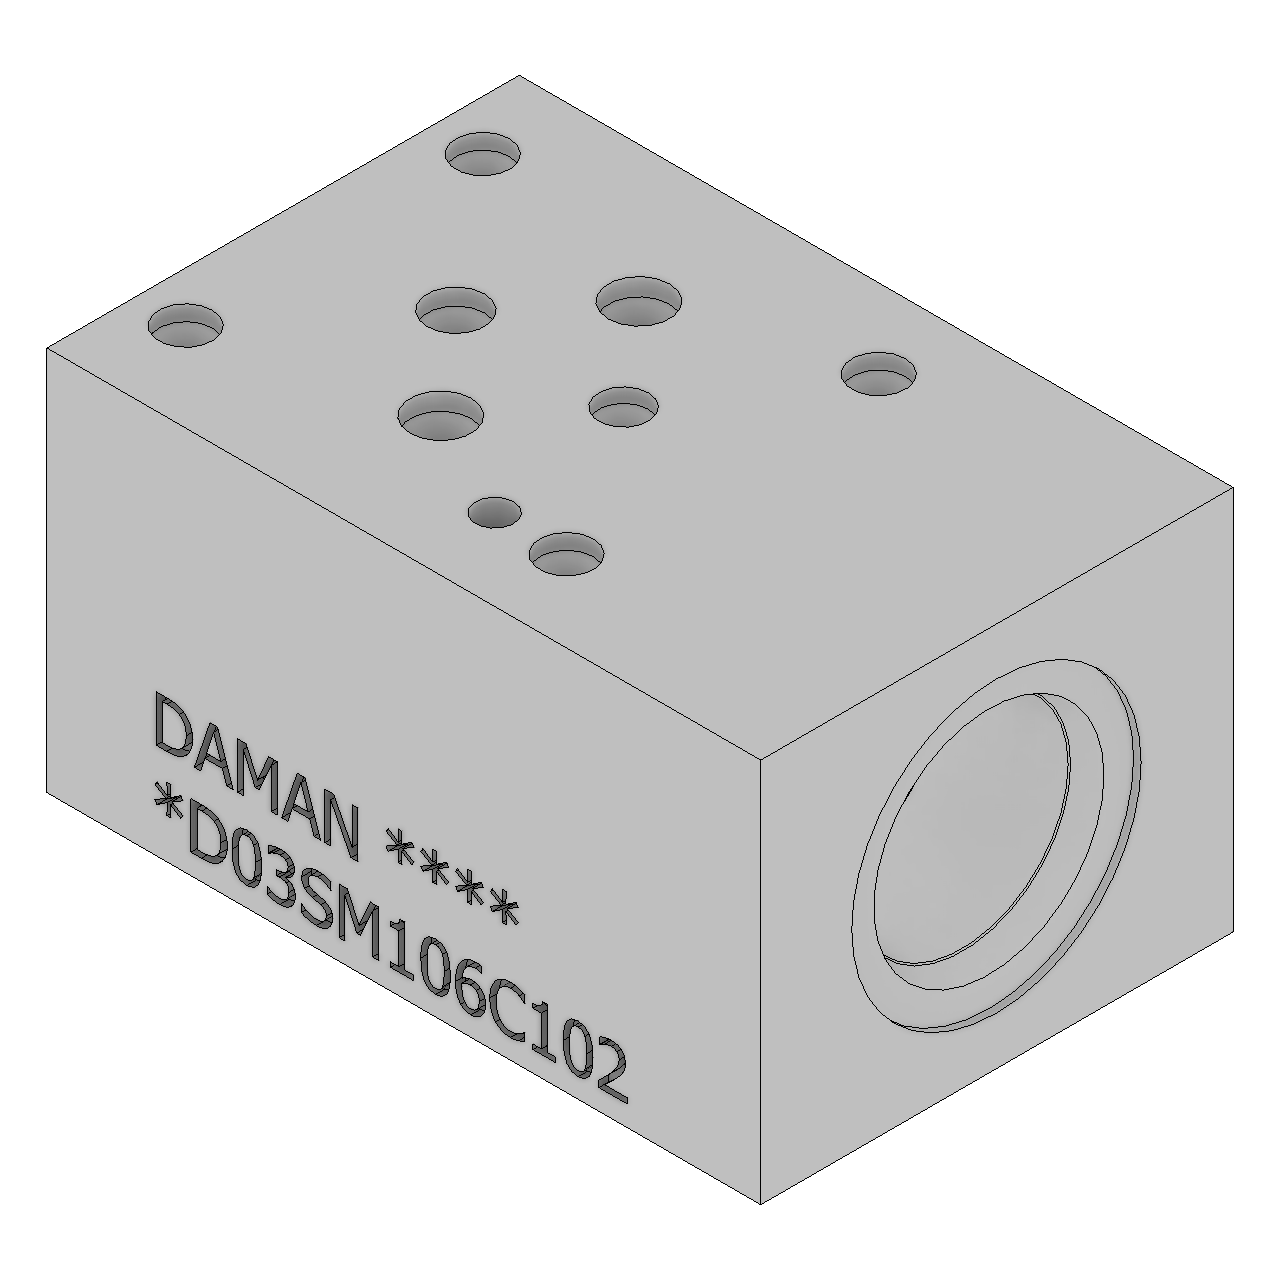 DD03SM106C102 - Sandwich Modules